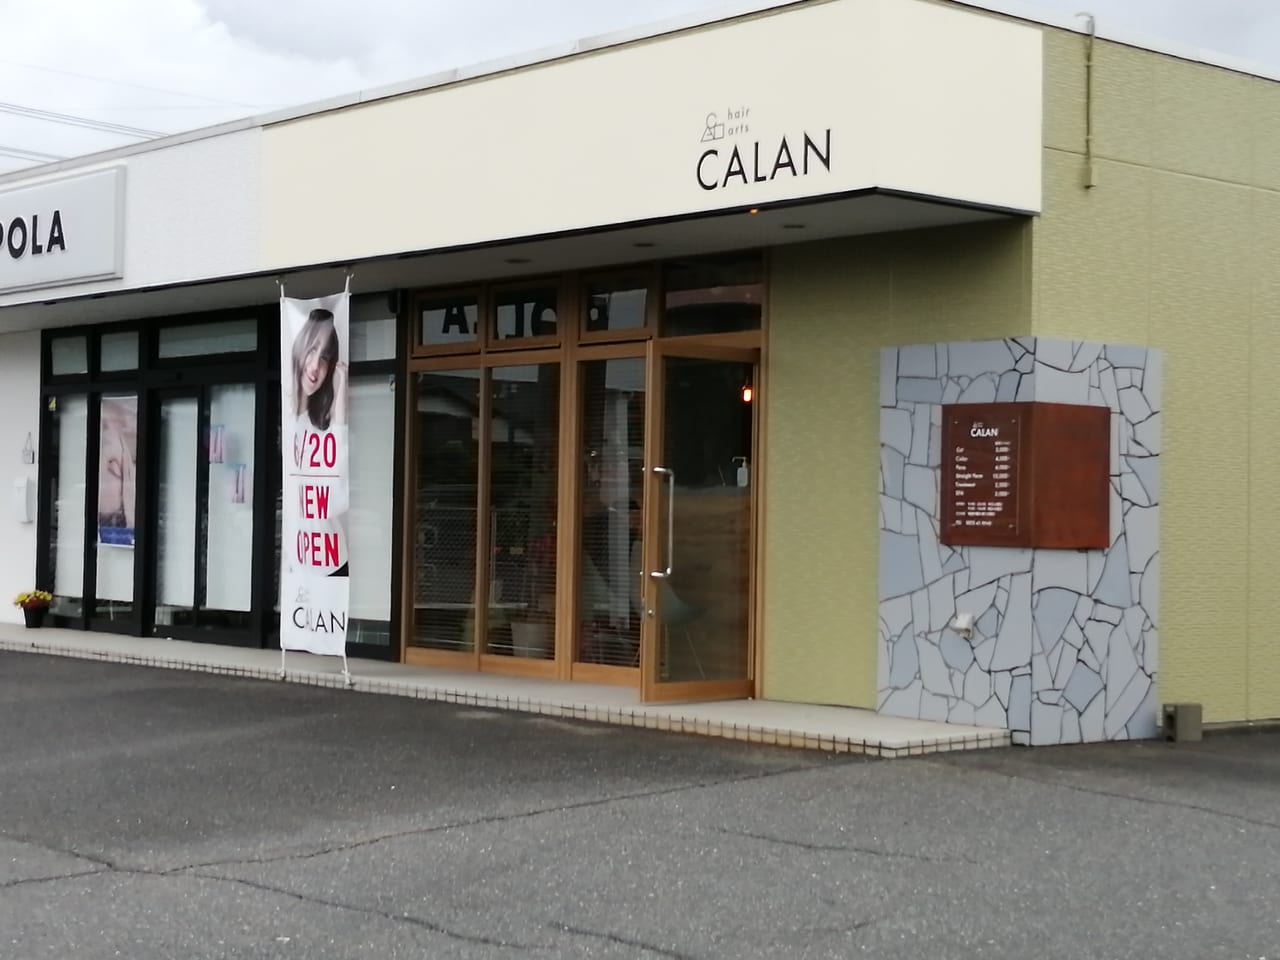 下松市 オシャレかわいい美容院を発見 Calan がシュクルヴァン近くにopenしていました 号外net 周南市 下松市 光市